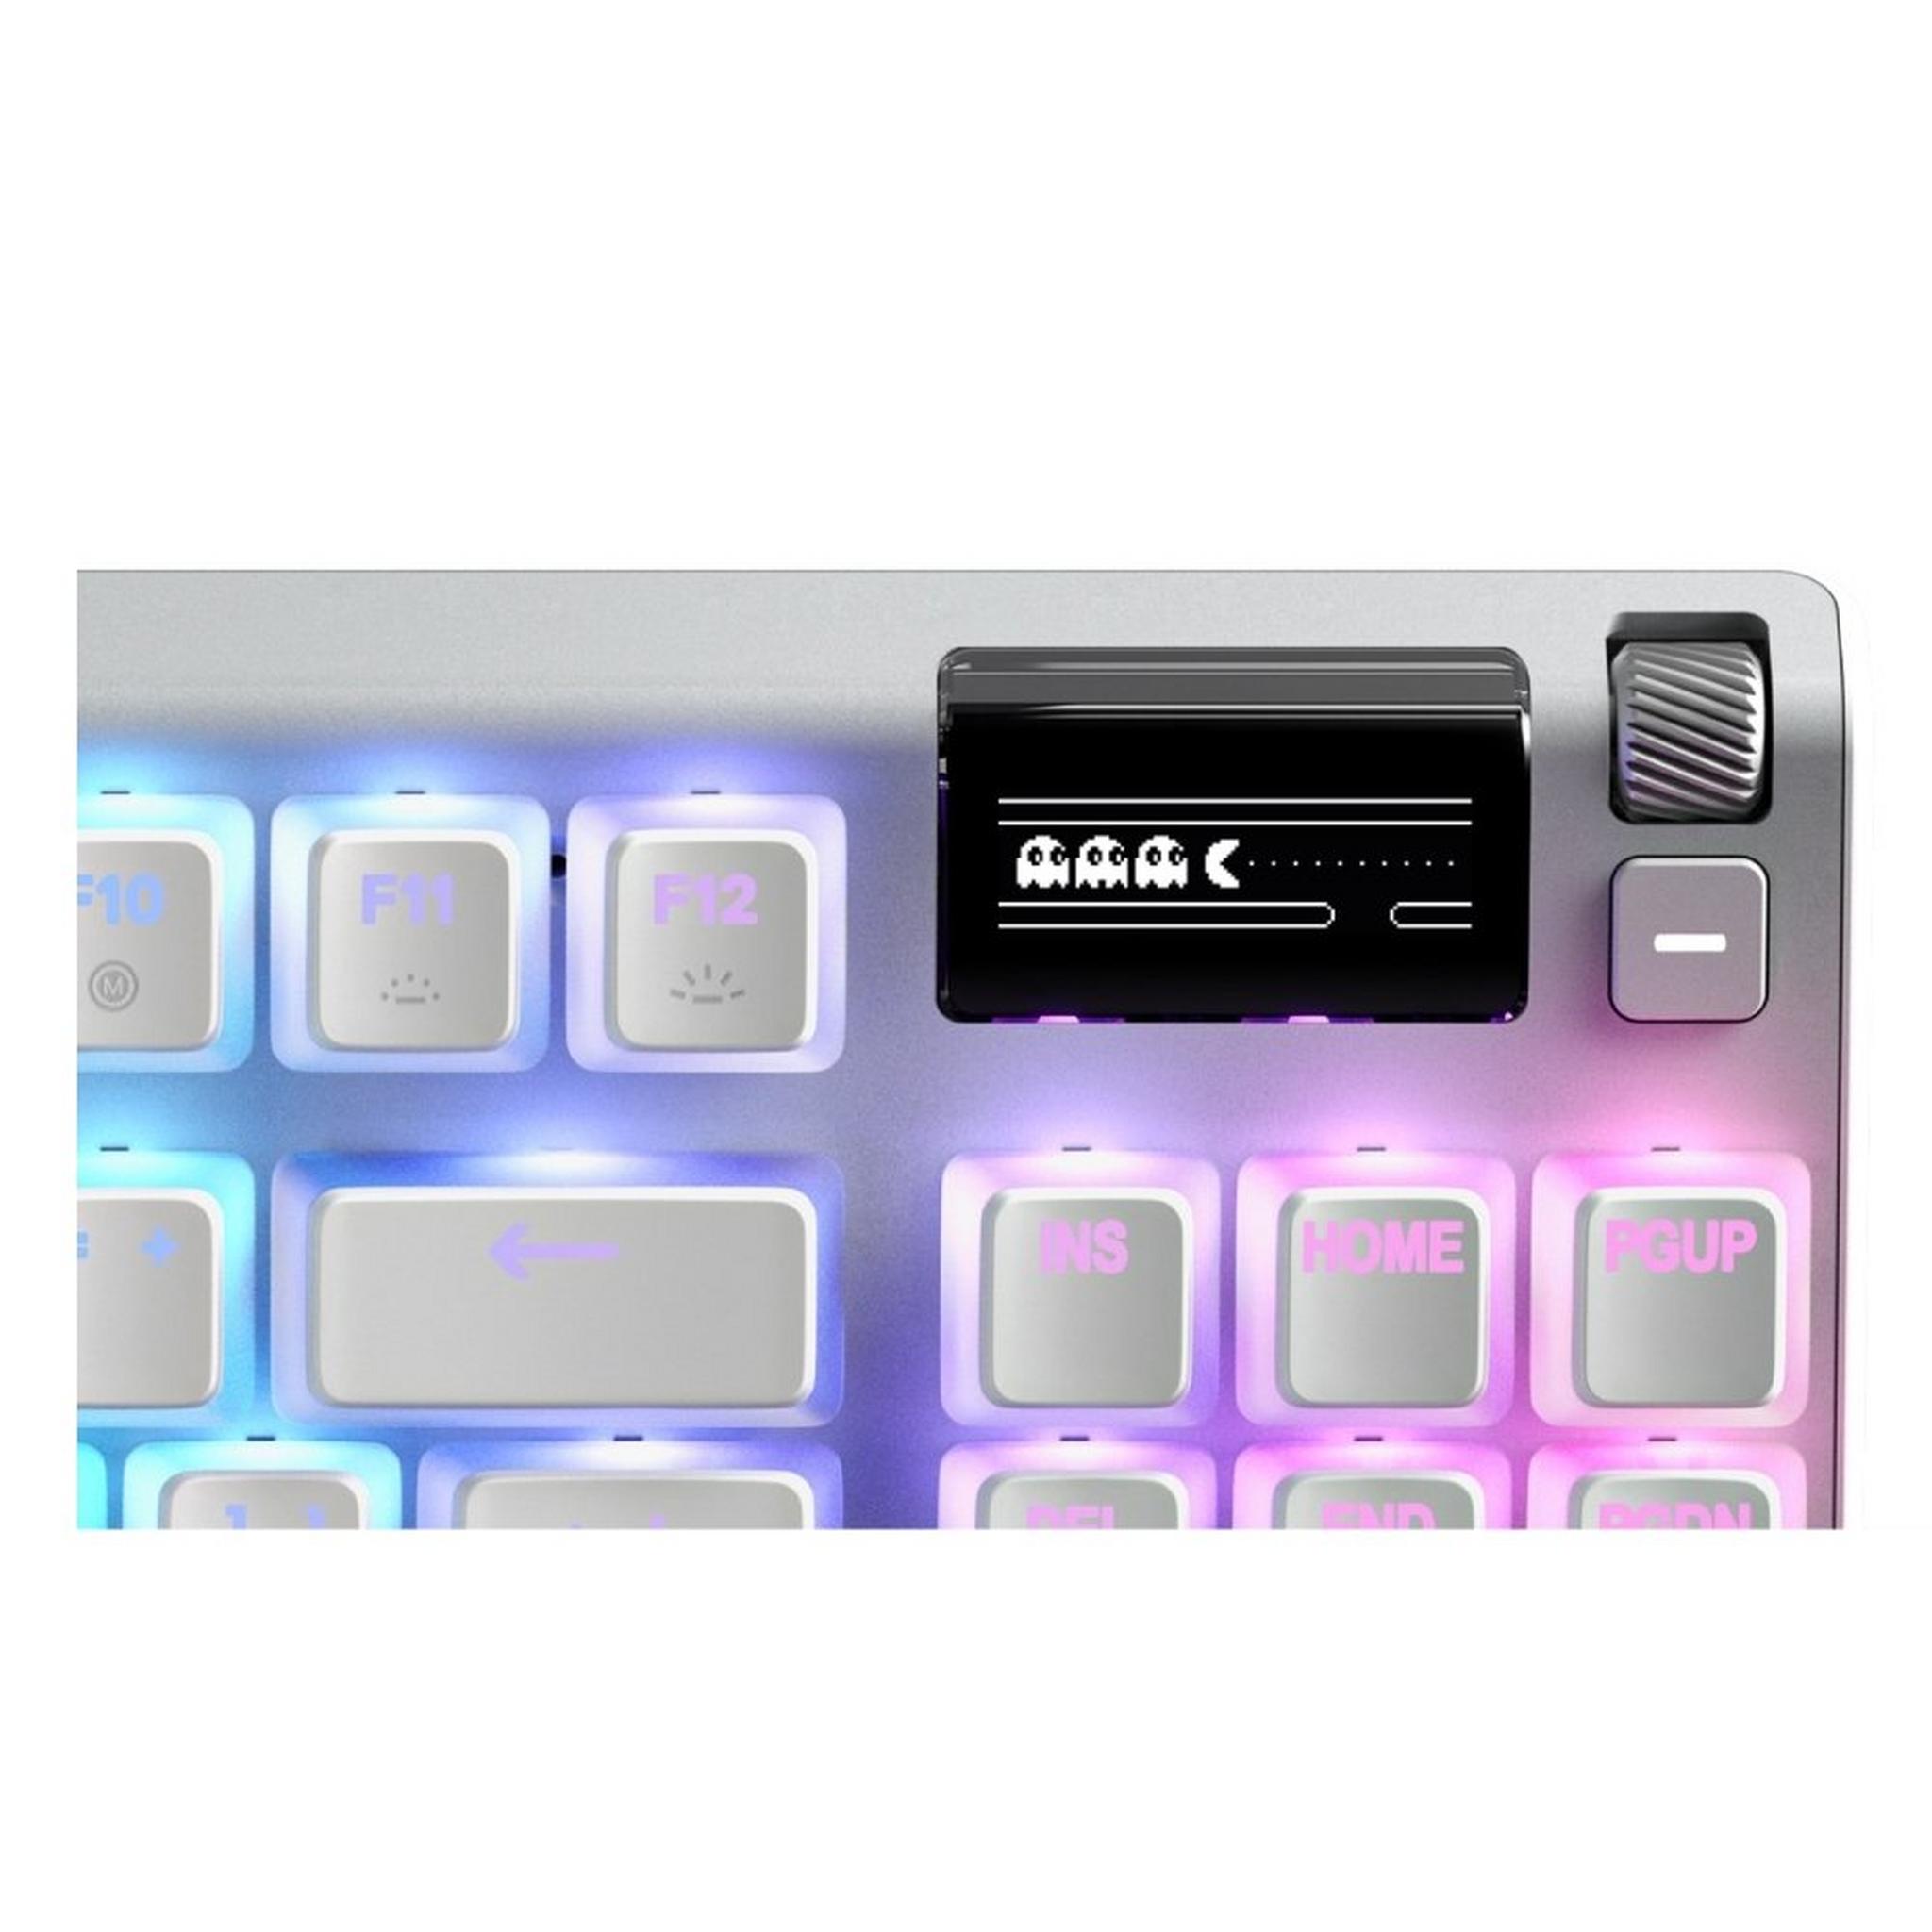 لوحة مفاتيح بدون لوحة الأرقام ايباكس 7 من ستيل سيرز - إصدار جوست